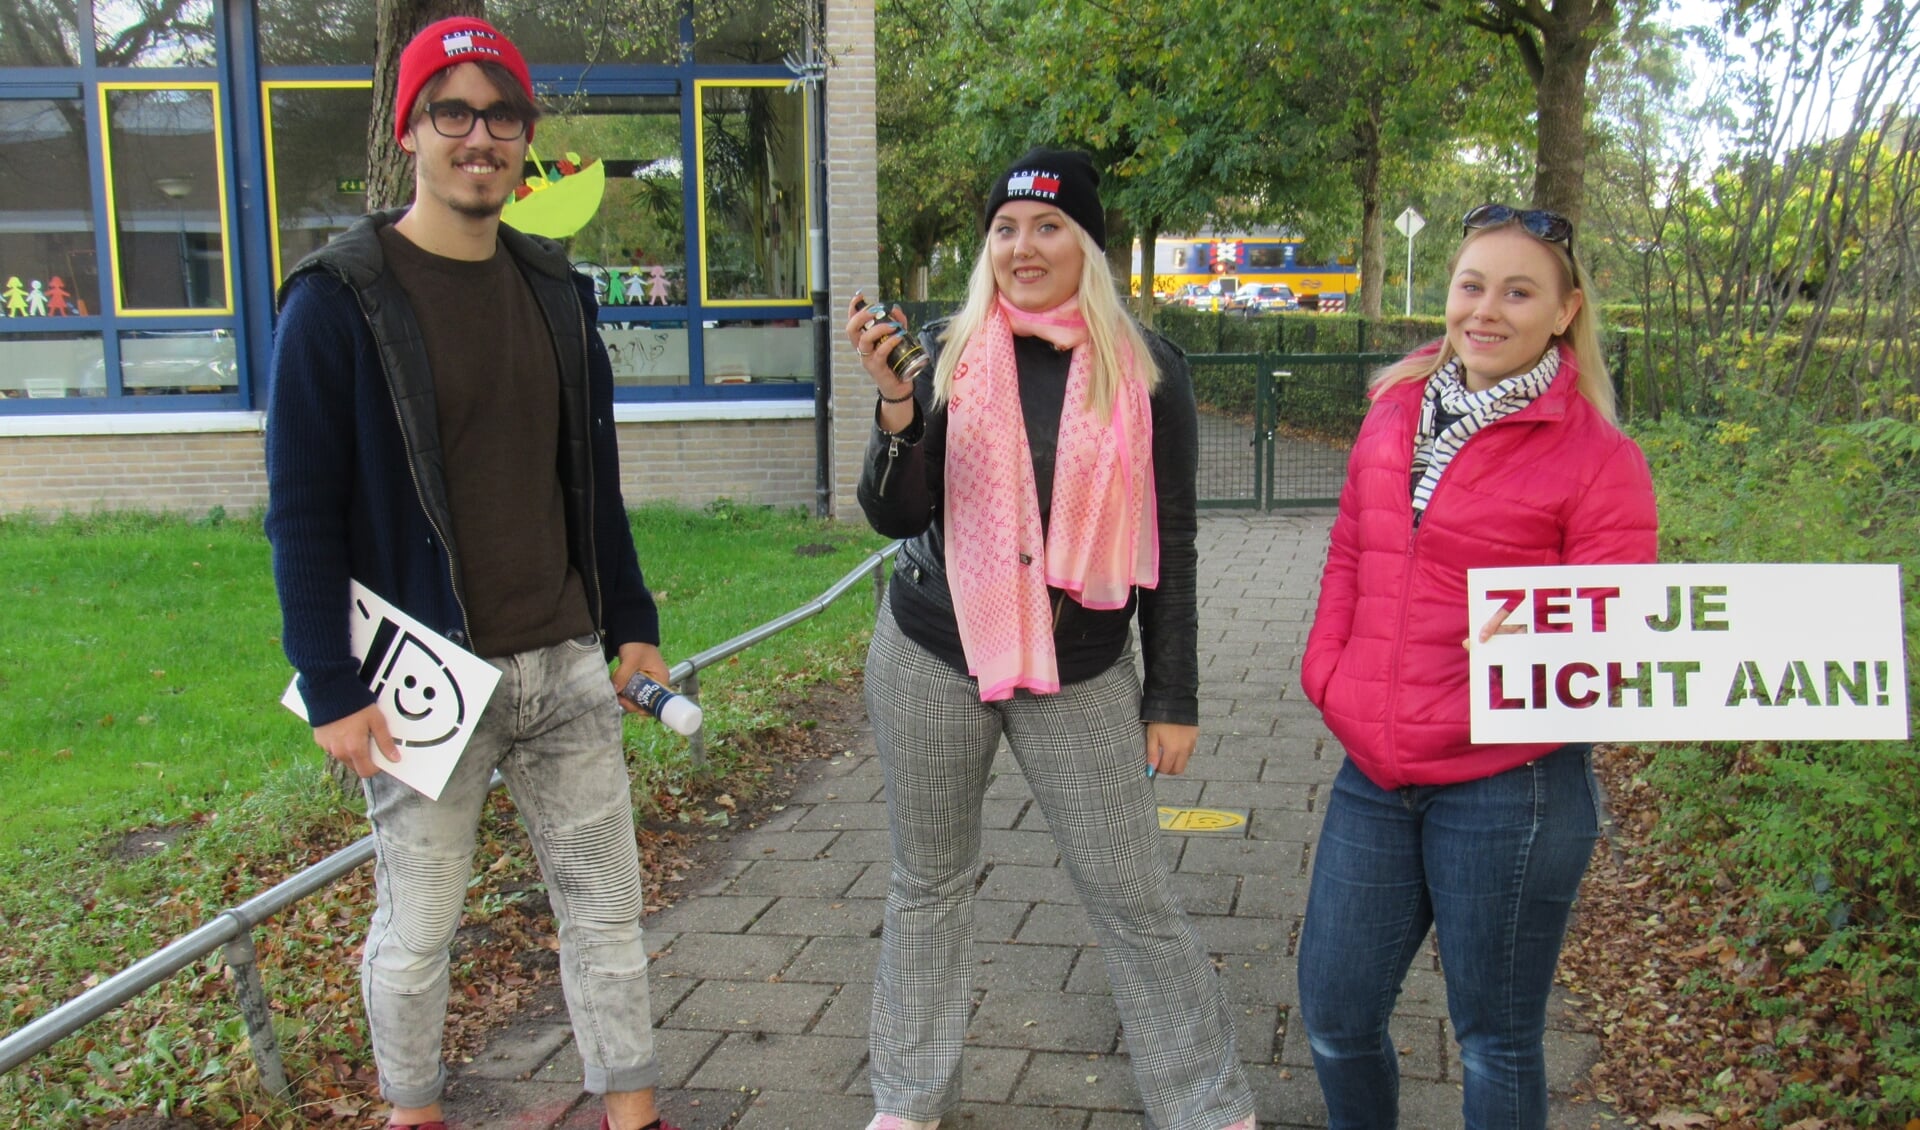 Mees, Else-Meike en Willemijn spoten met spuitkrijt de tekst 'Zet je licht aan' op fietspaden rond scholen. 